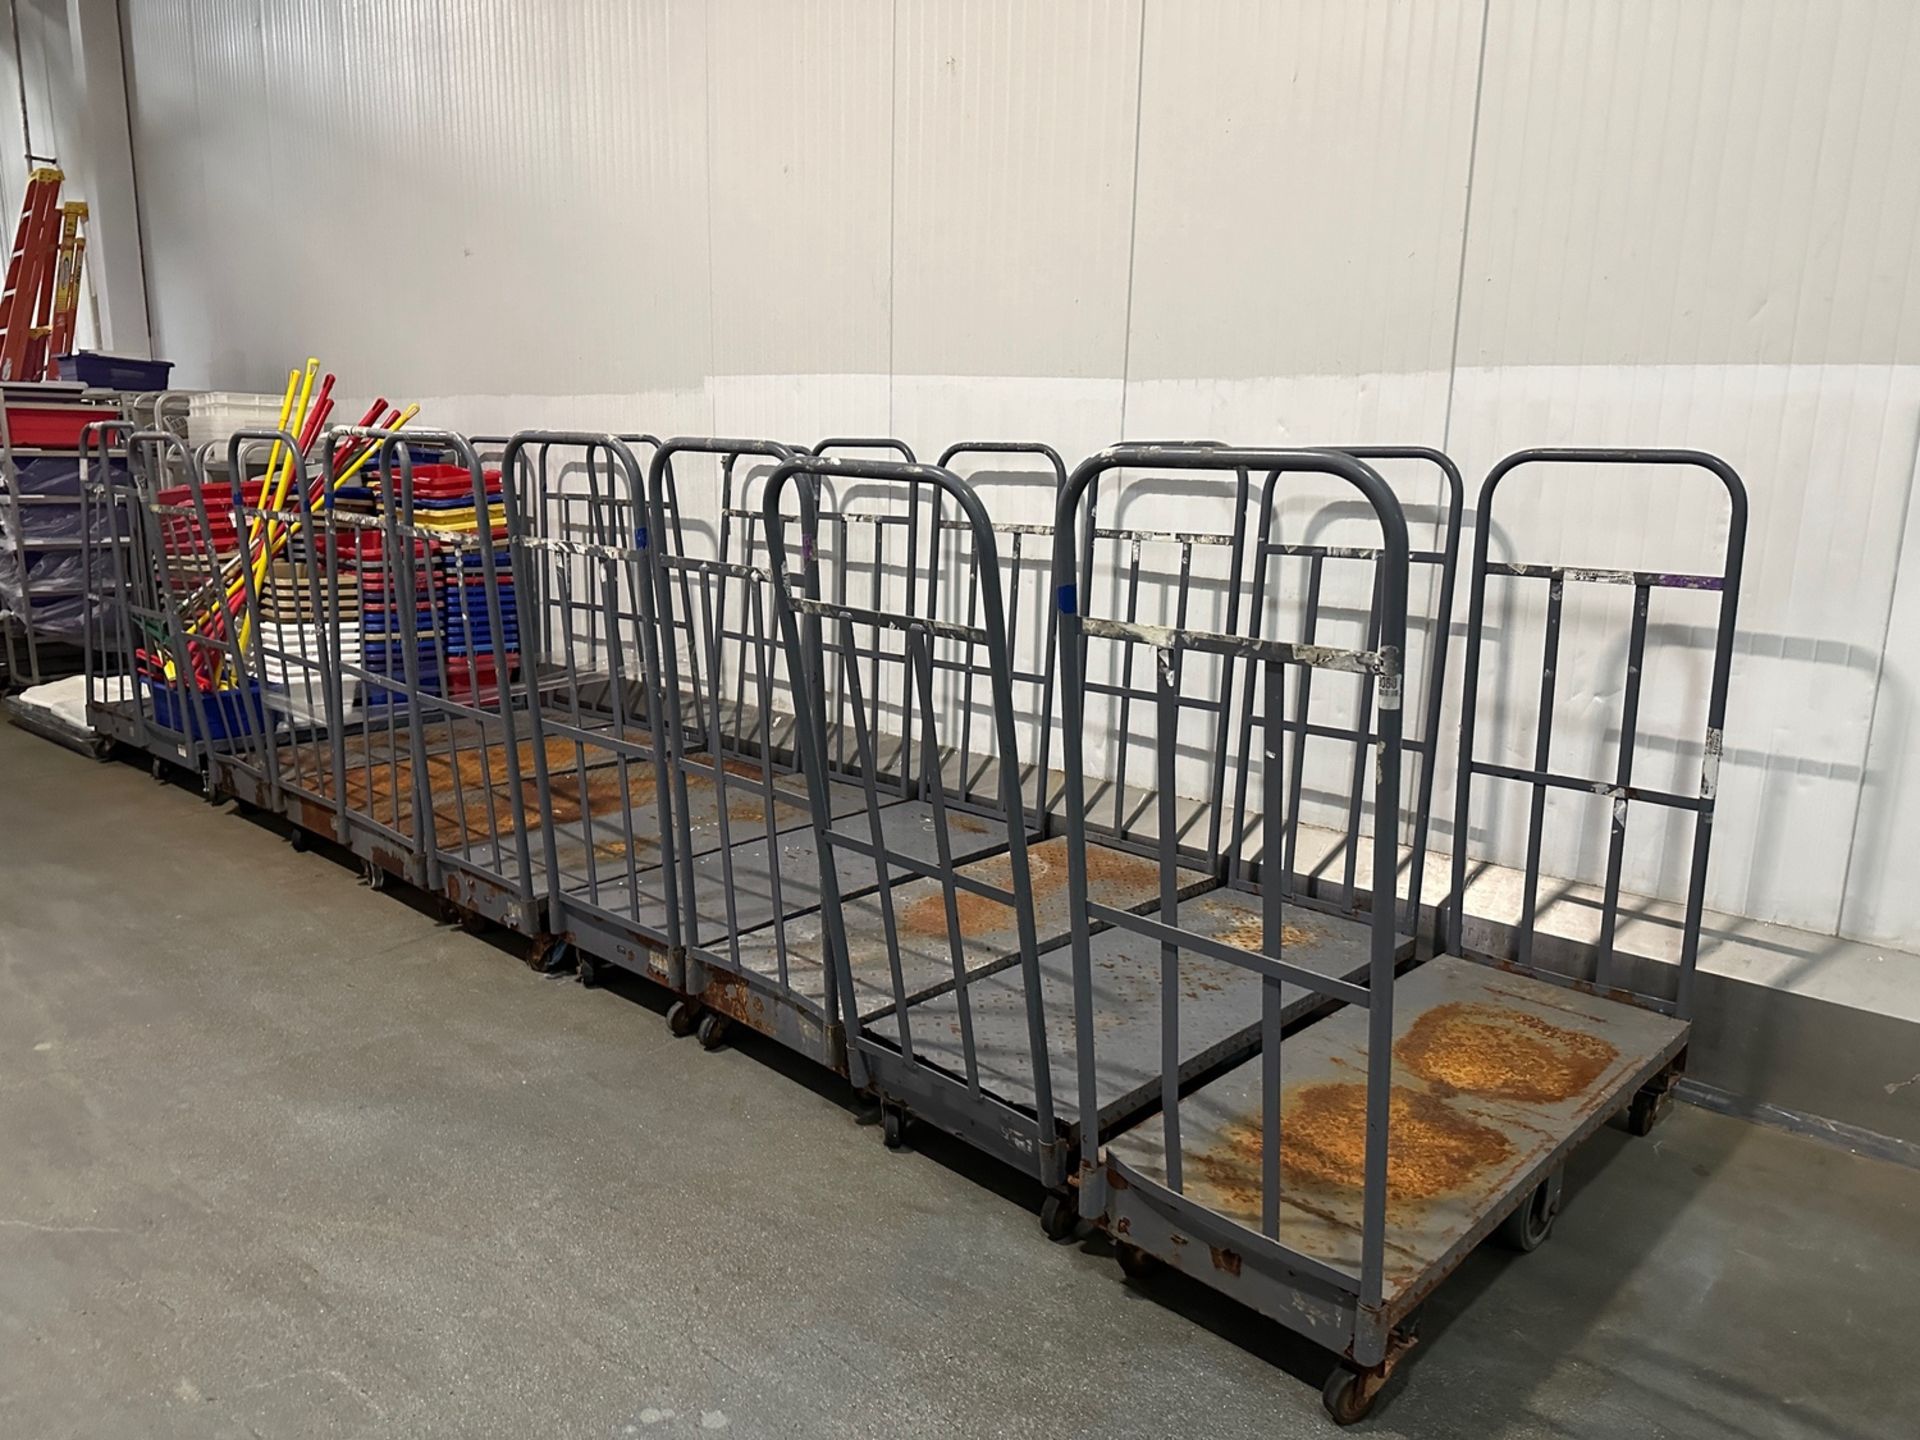 (11) Warehouse Carts | Rig Fee $100